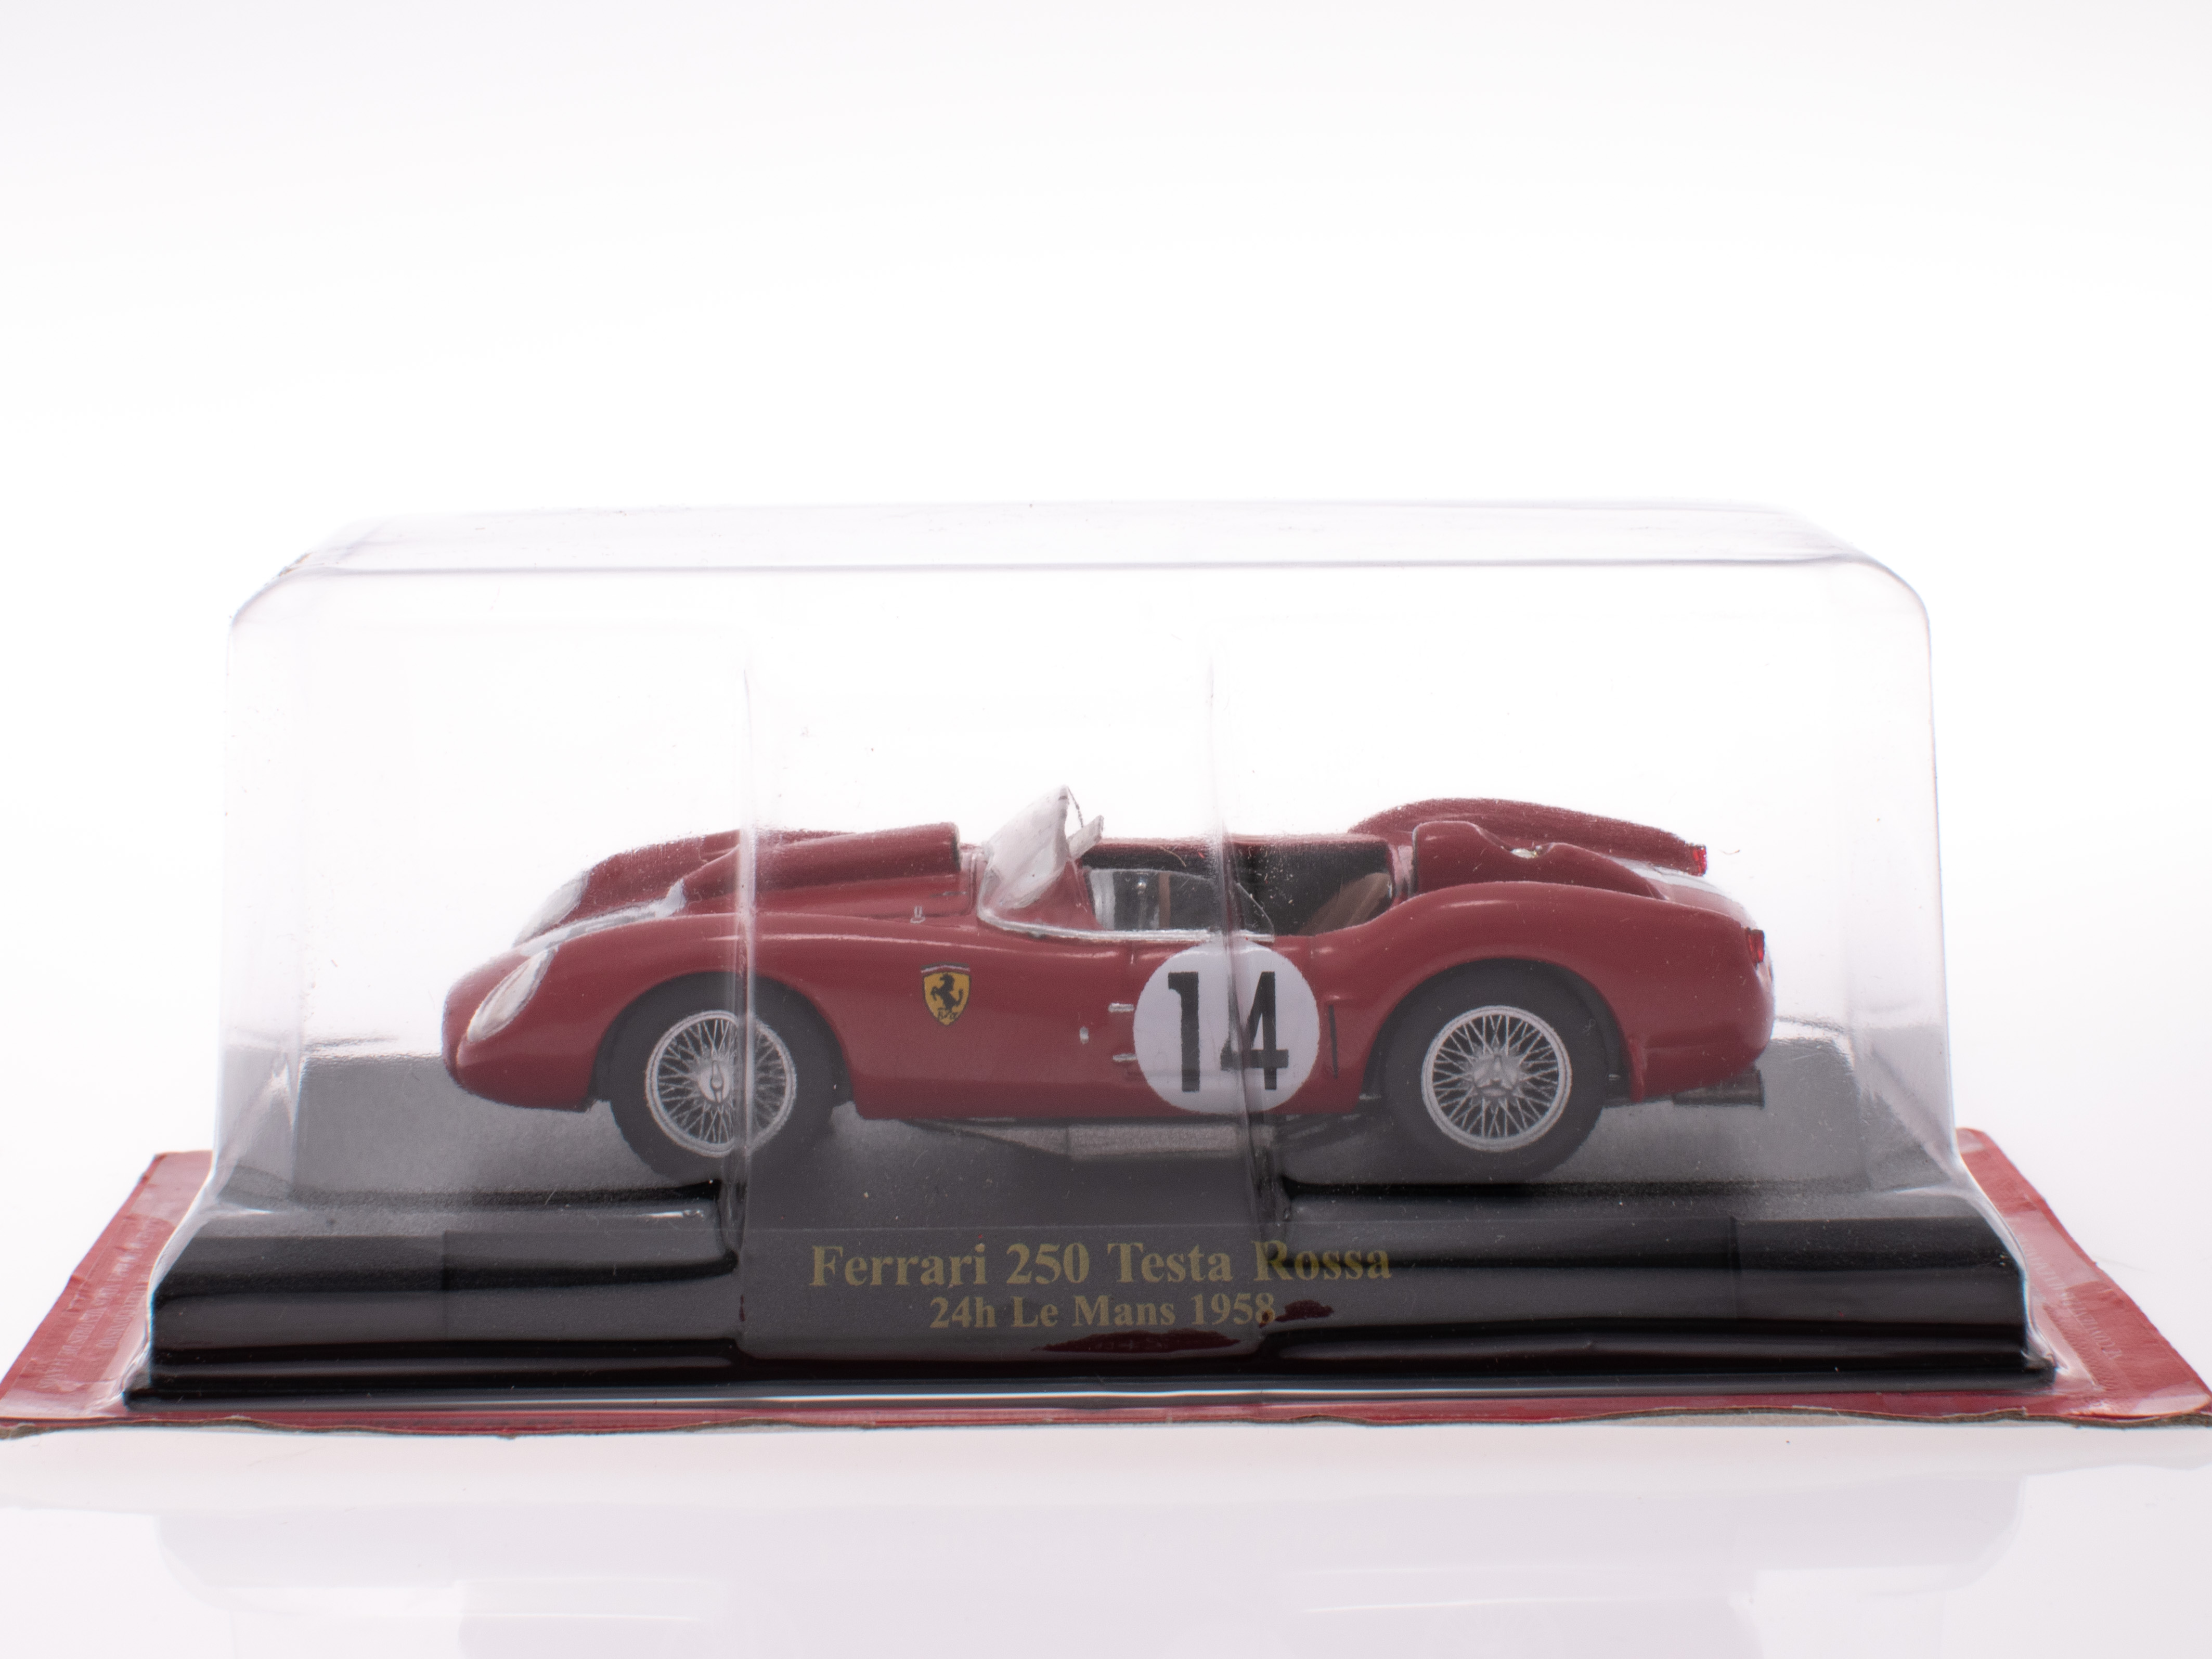 Ferrari 250 Testa Rossa - 24h Le Mans 1958